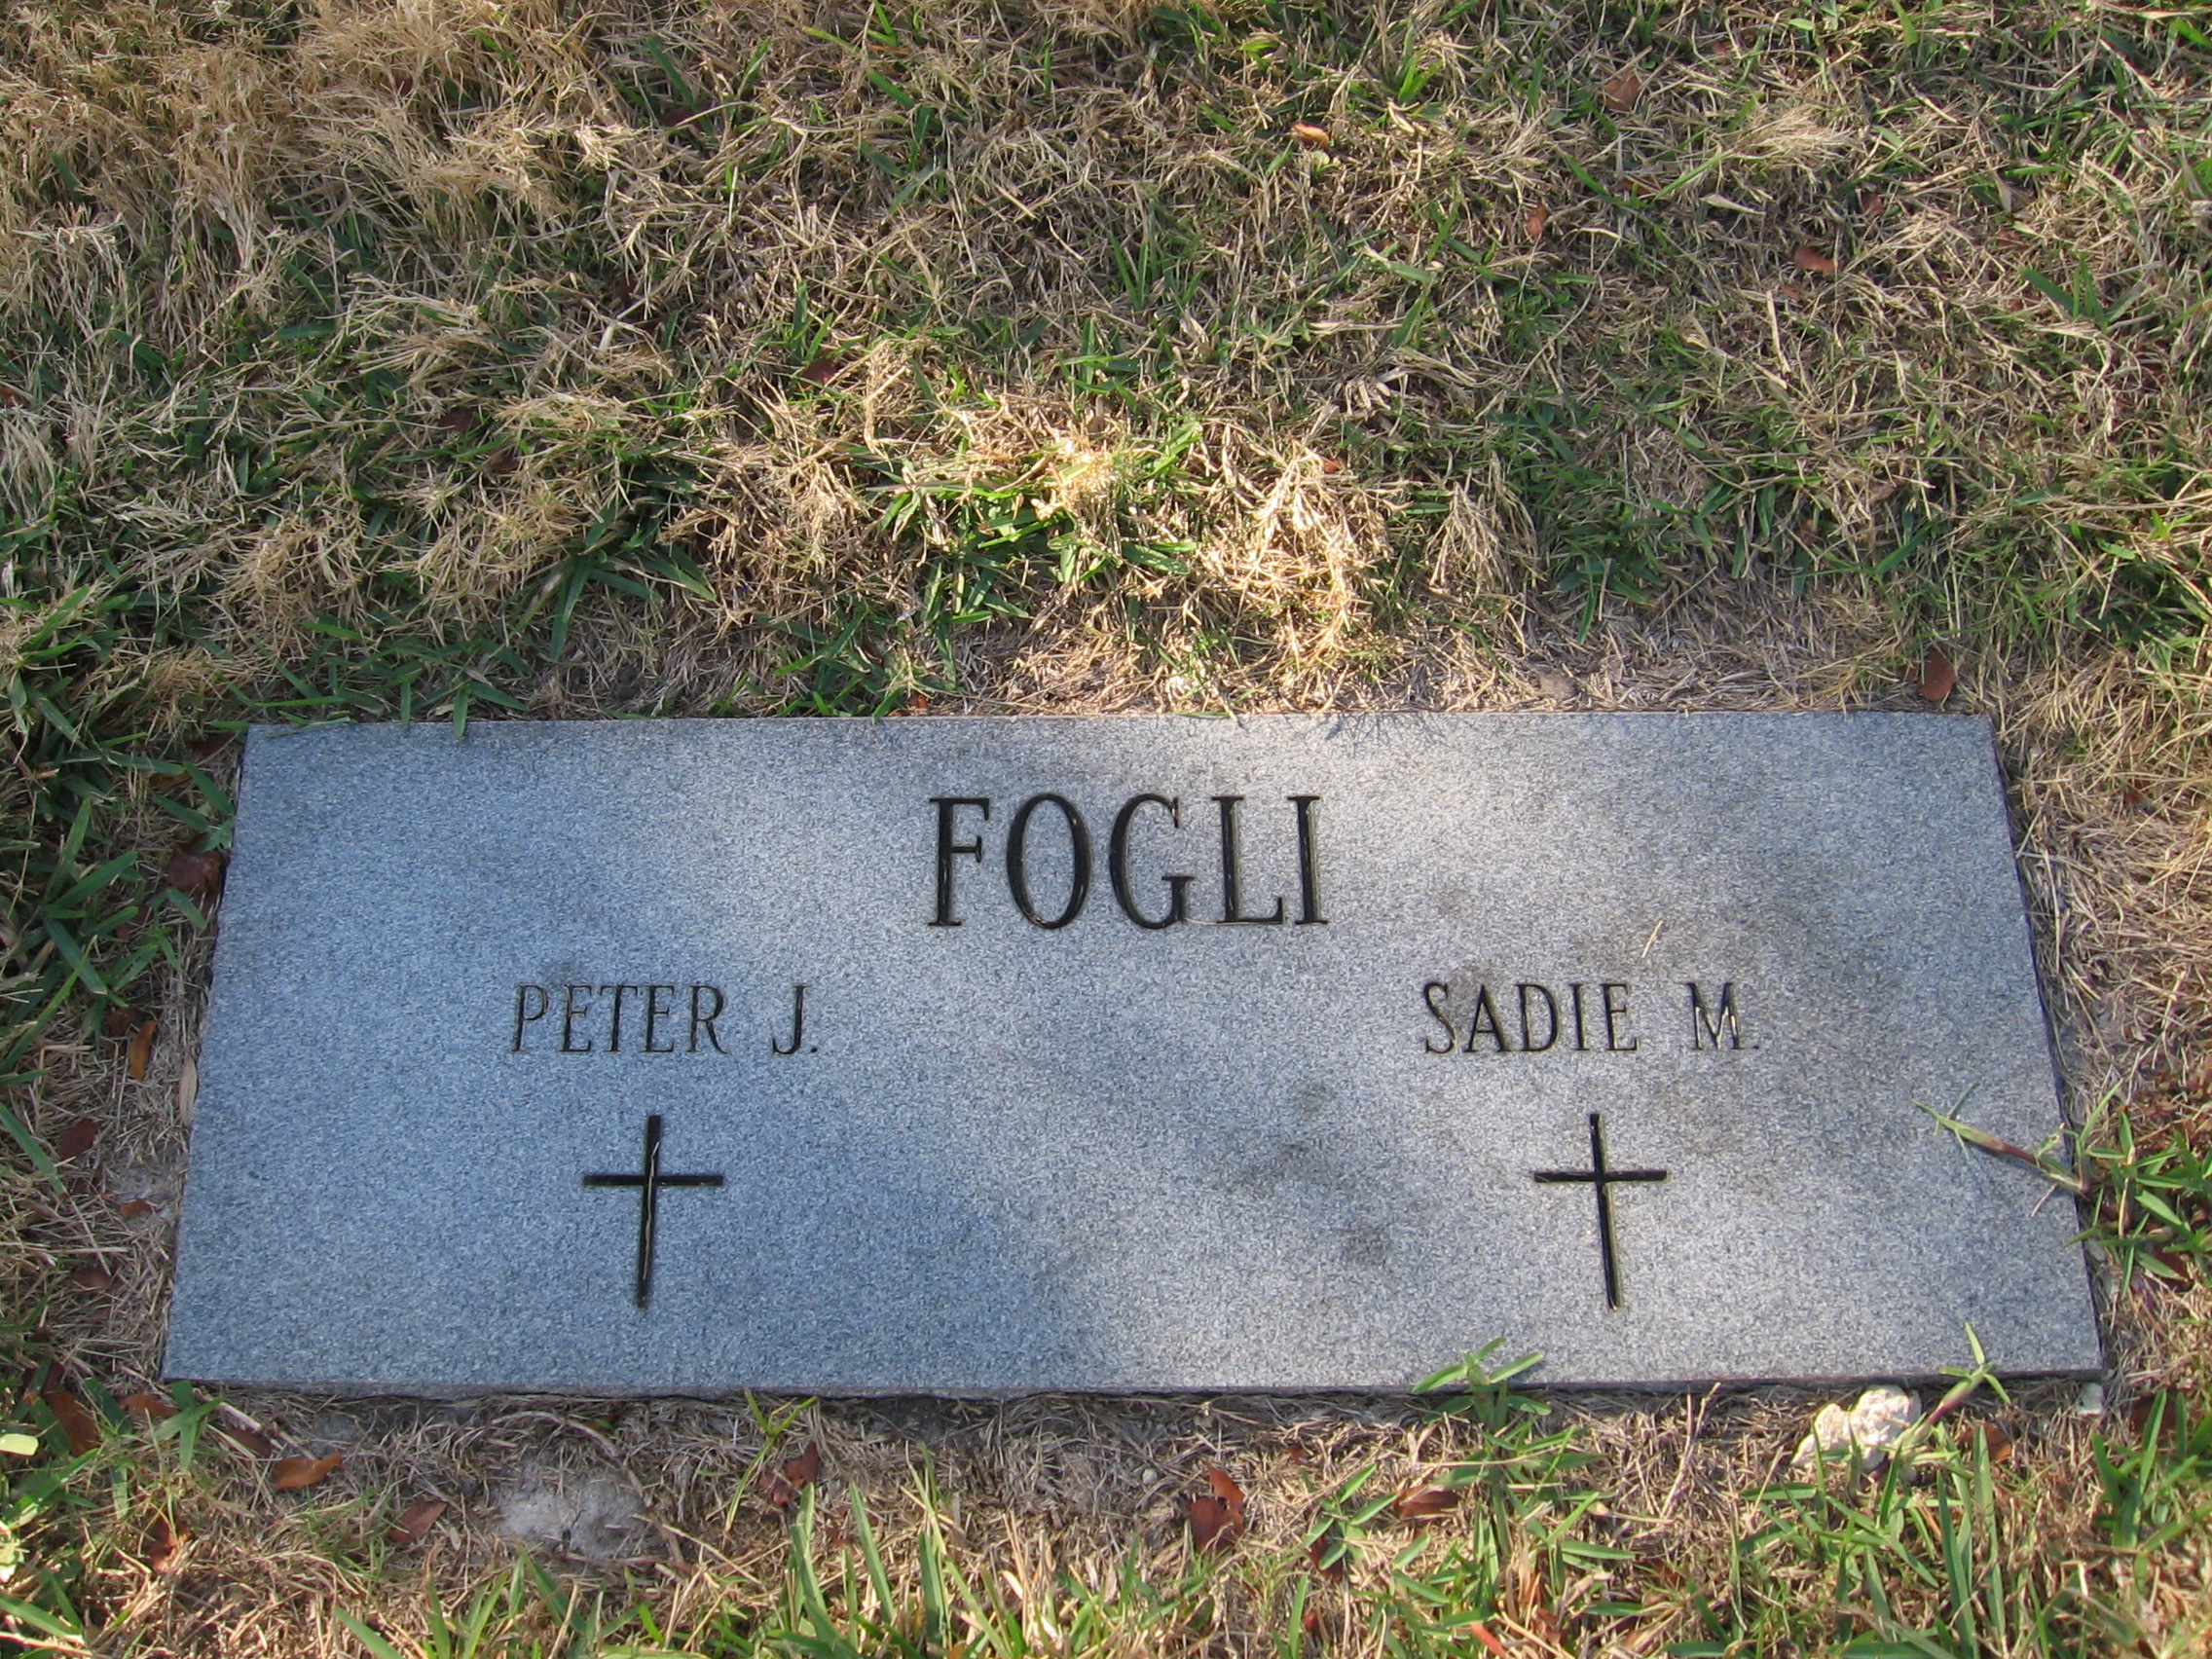 Peter J Fogli